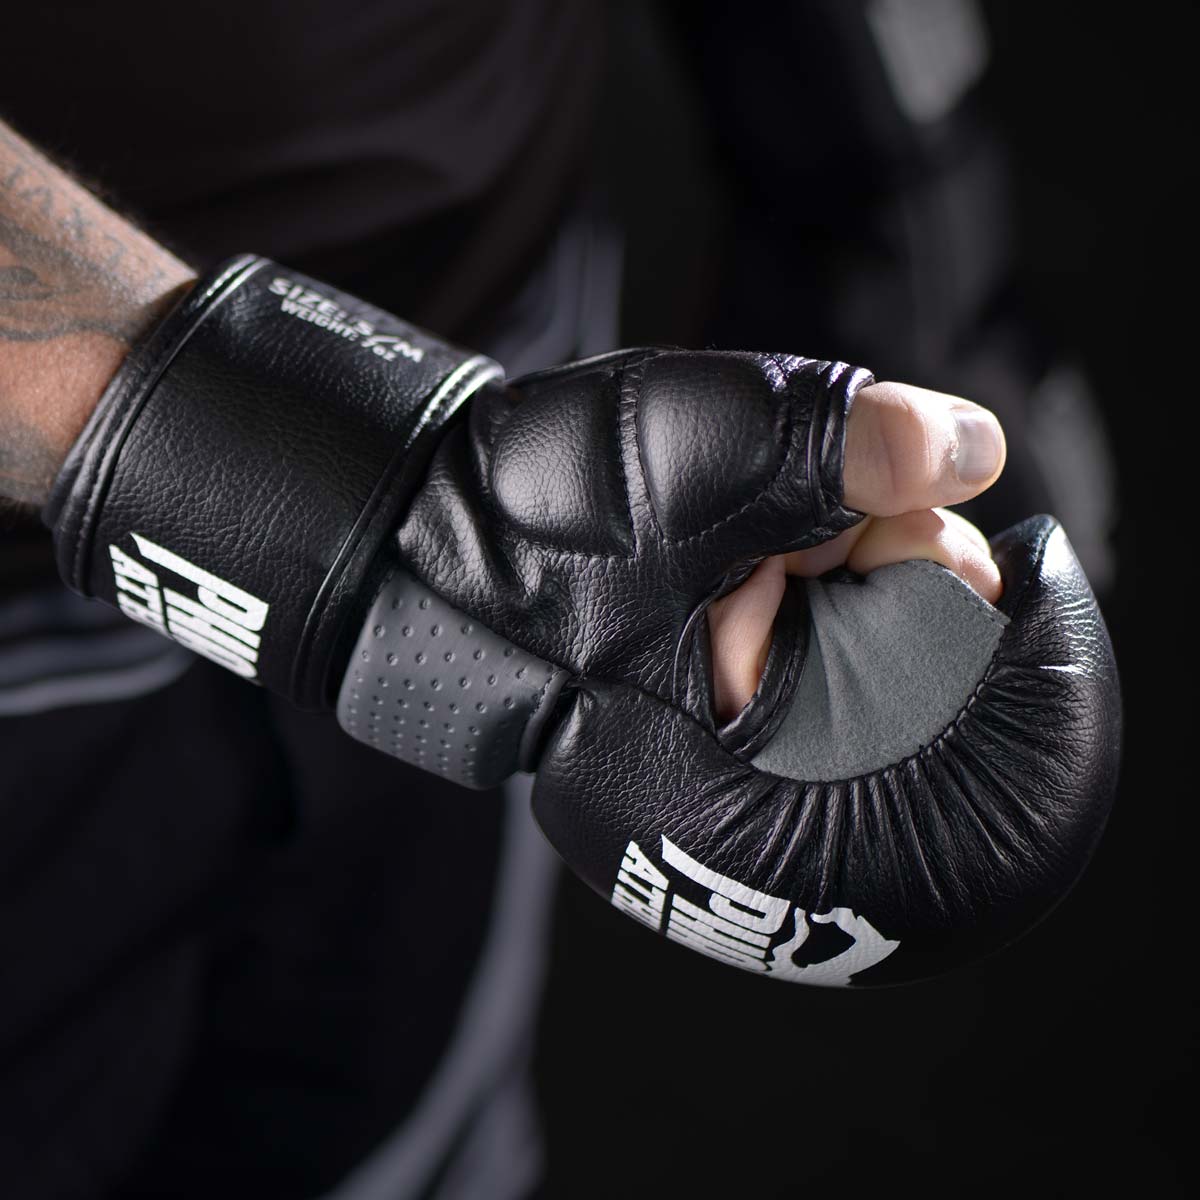 Rundum Schutz im Kampfsport Training mit dem Phantom RIOT MMA Sparring Handschuh  mit extra Daumenschutz